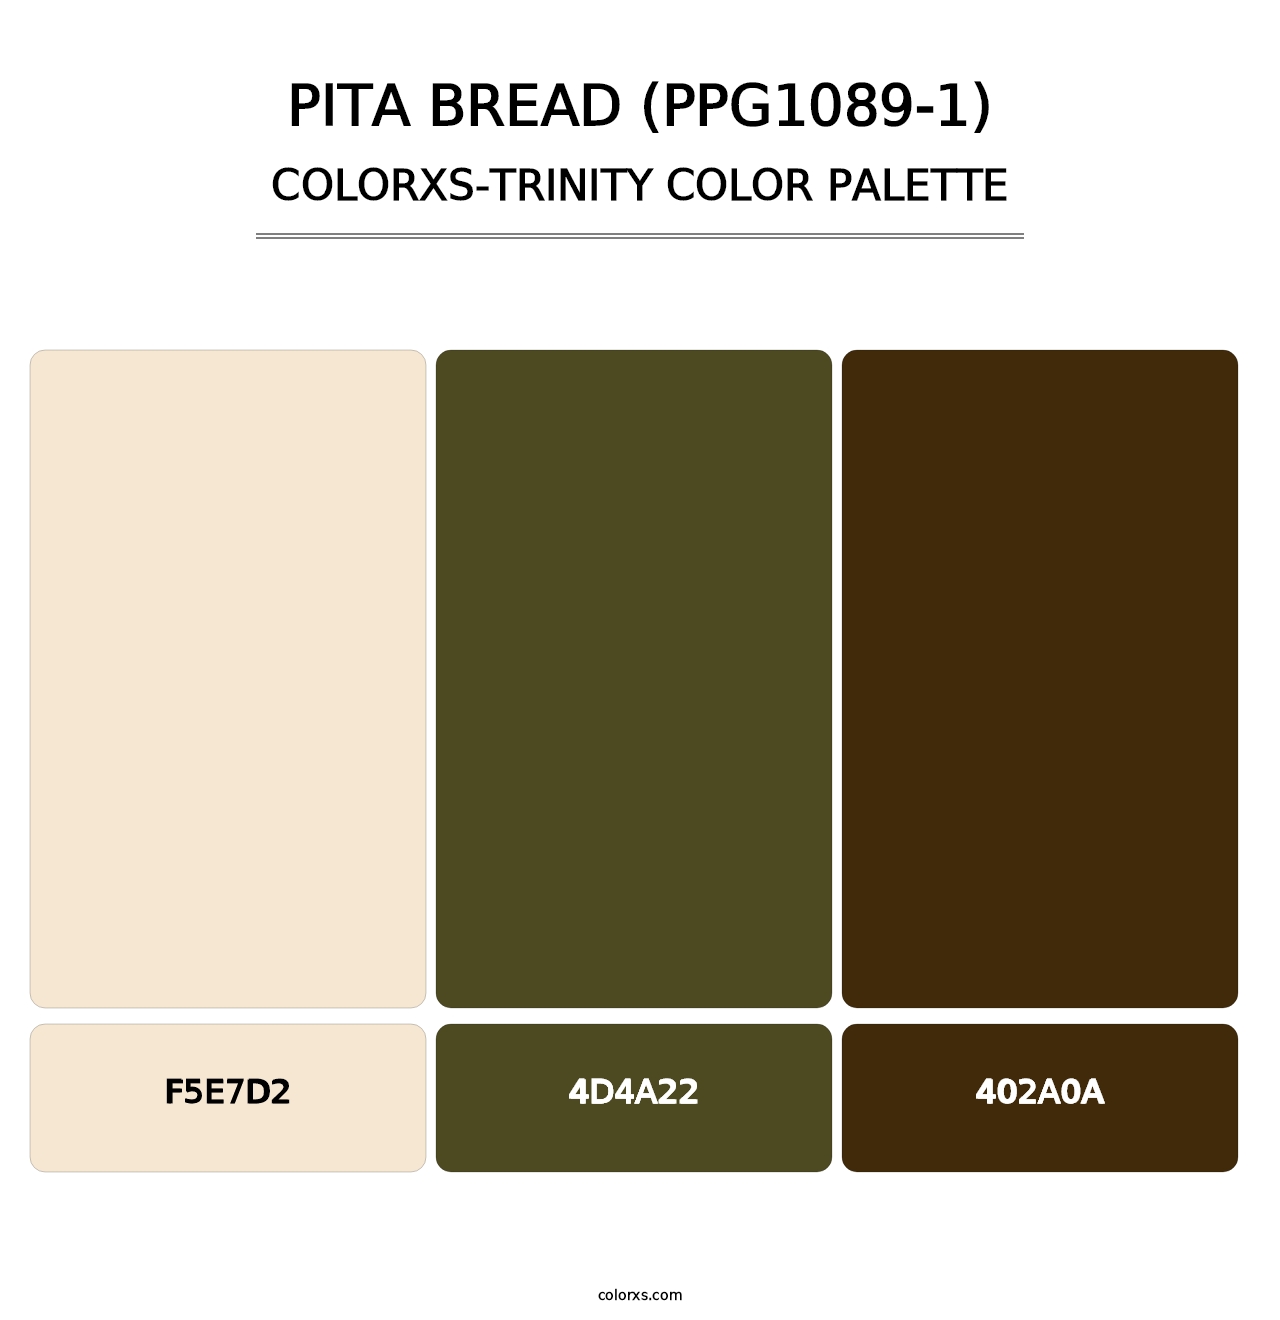 Pita Bread (PPG1089-1) - Colorxs Trinity Palette